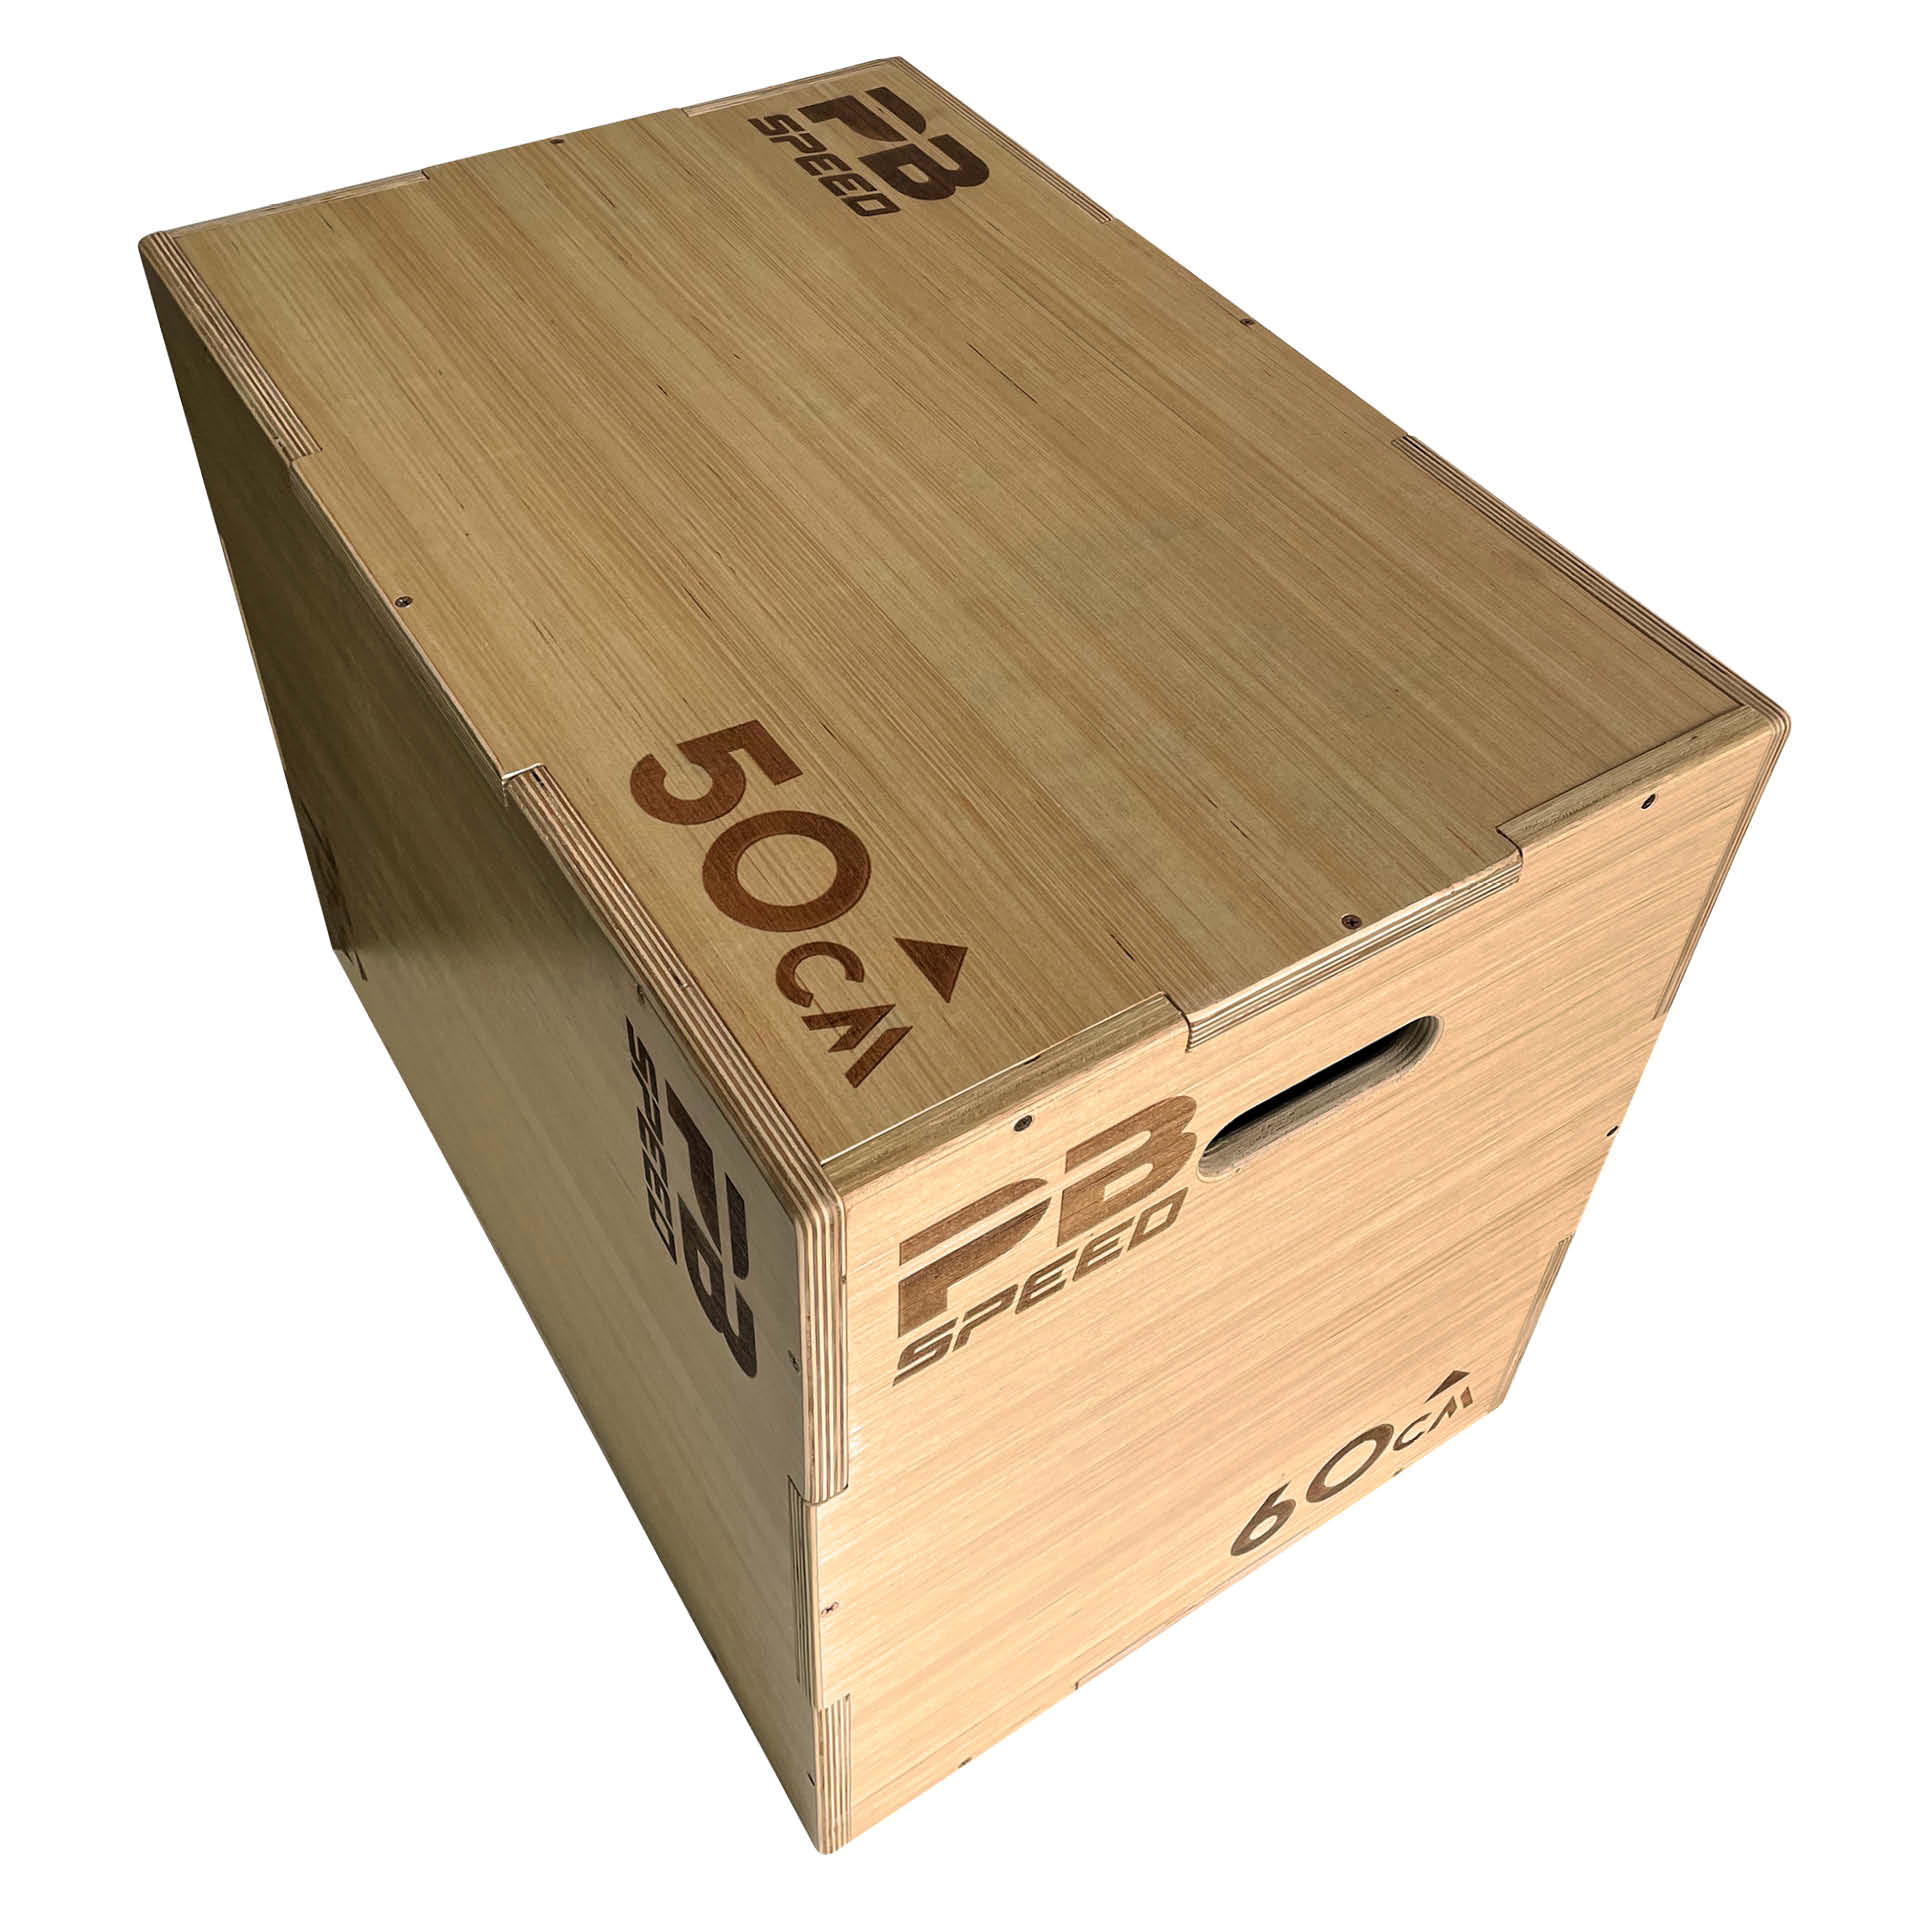 PB Speed Holz Plyo Box